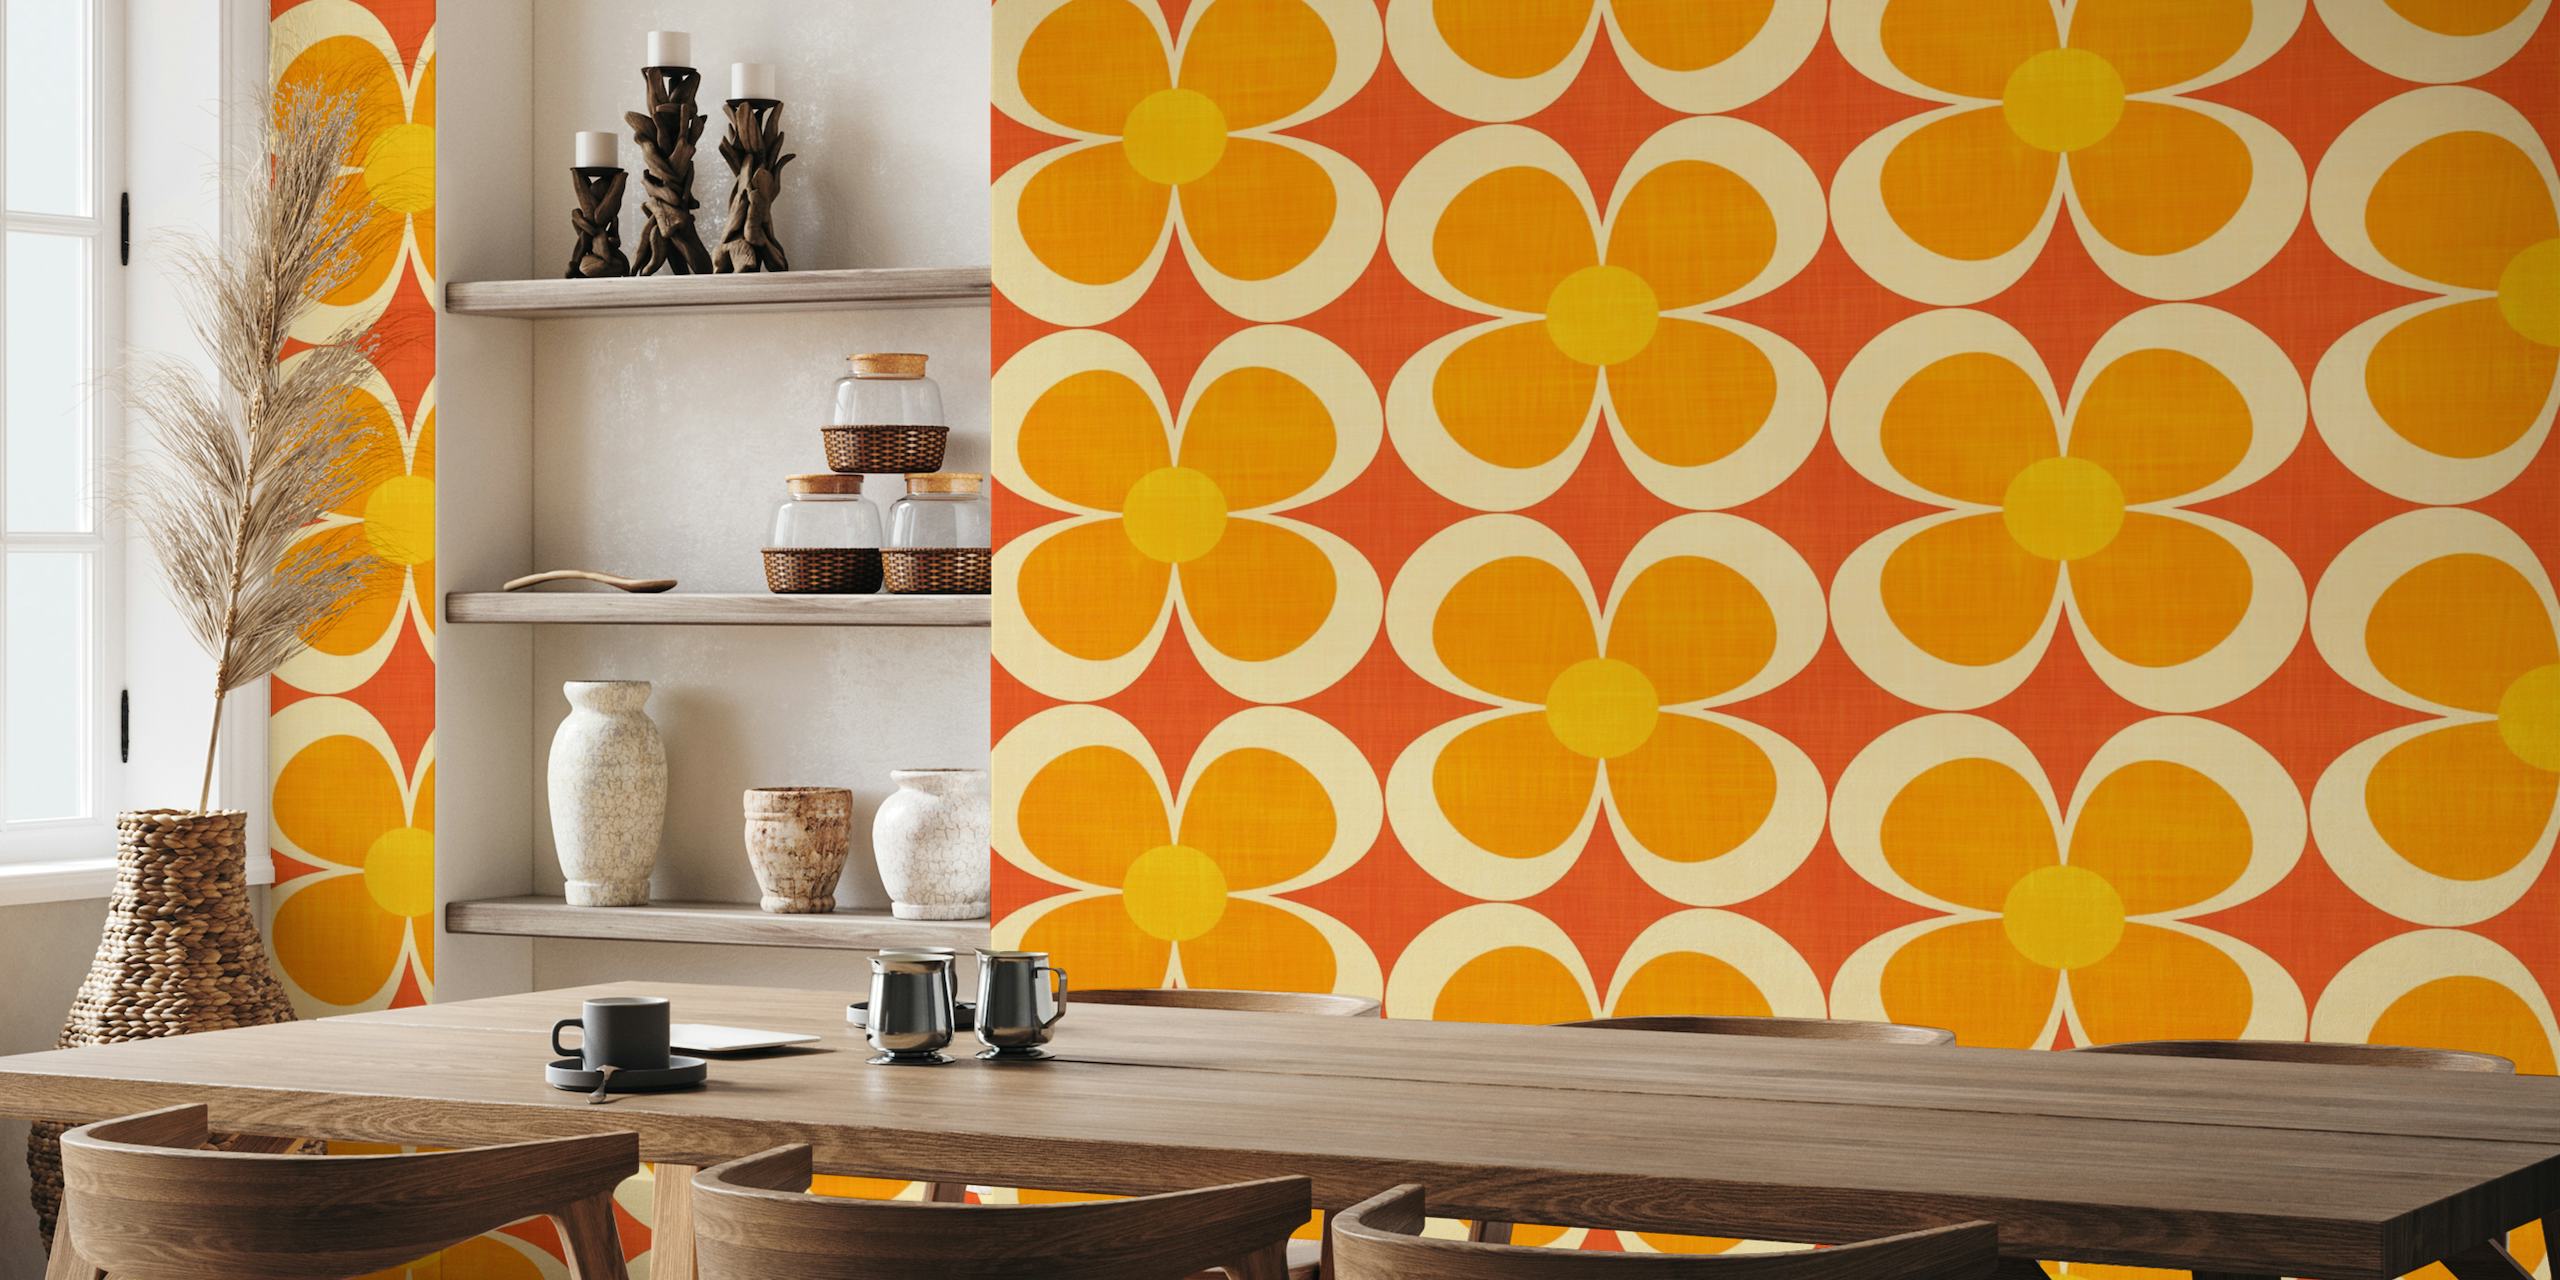 Inspirowana stylem retro Groovy geometryczna fototapeta z kwiatowymi motywami w kolorze pomarańczowym, żółtym i czerwonym